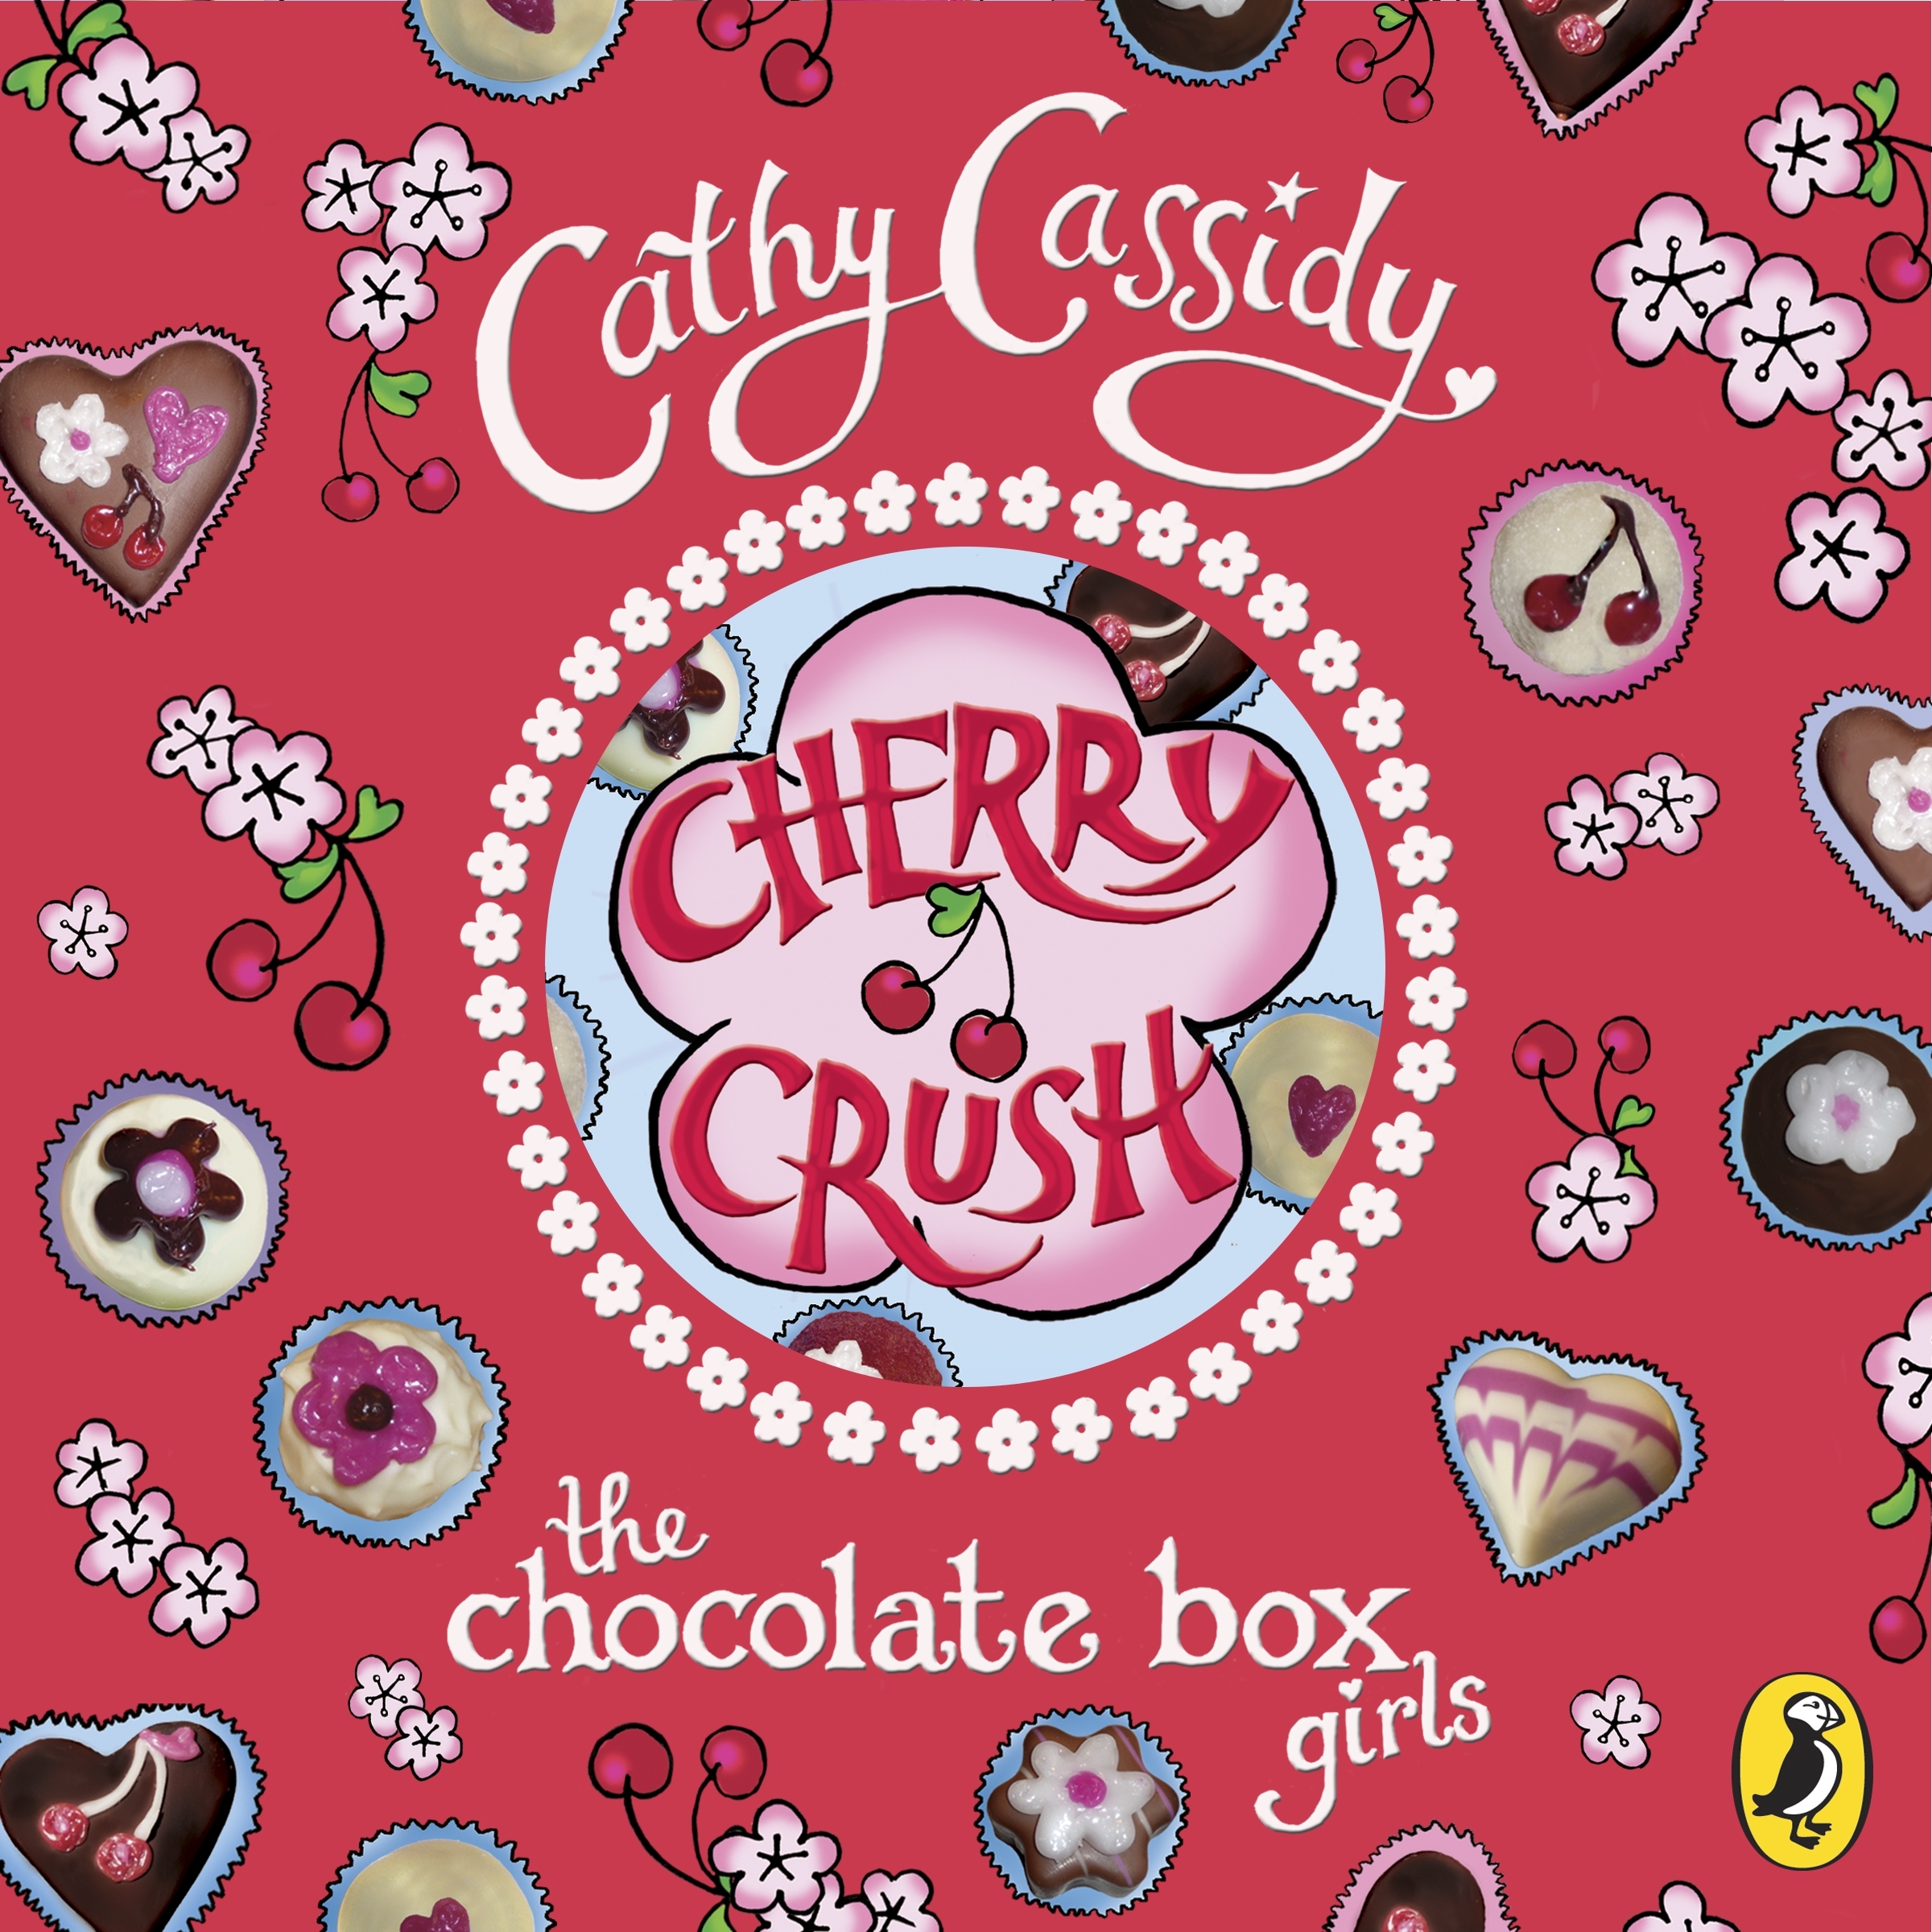 Chocolate Box Girls Cherry Crush By Cathy Cassidy Penguin Books Australia